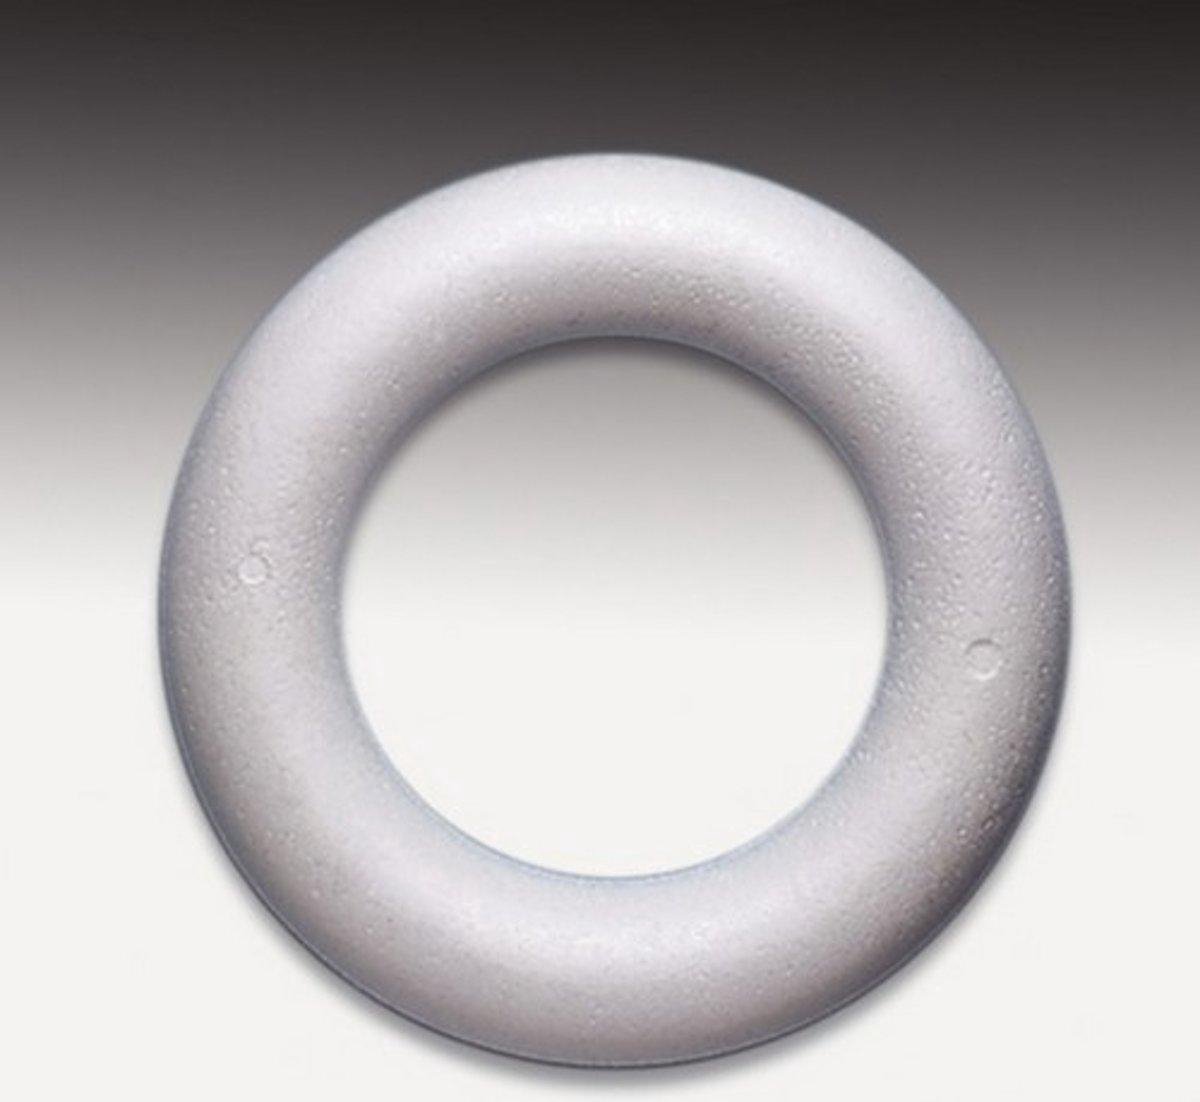 Styropor volle ring [ piepschuim ] 22 cm, 10 STUKS. LEUK VOOR KERSTKRANSEN.